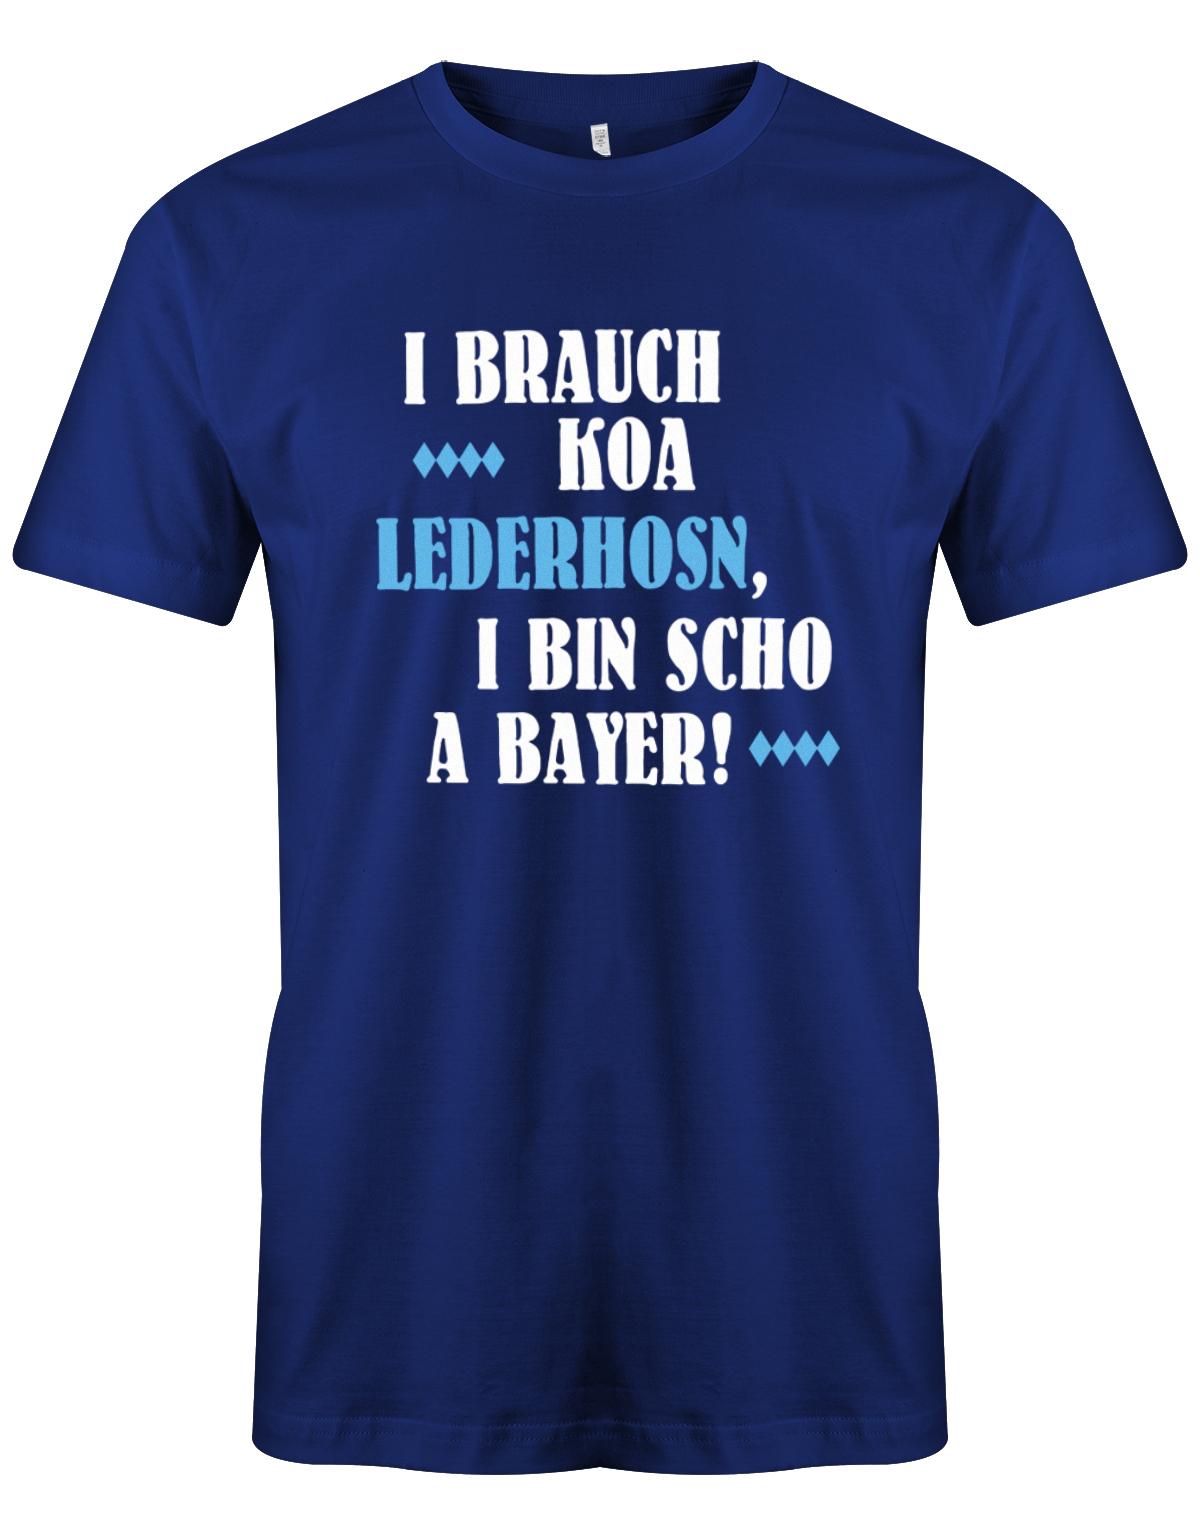 i-brauch-koa-lederhosn-i-bin-schon-a-bayer-herren-royalblau